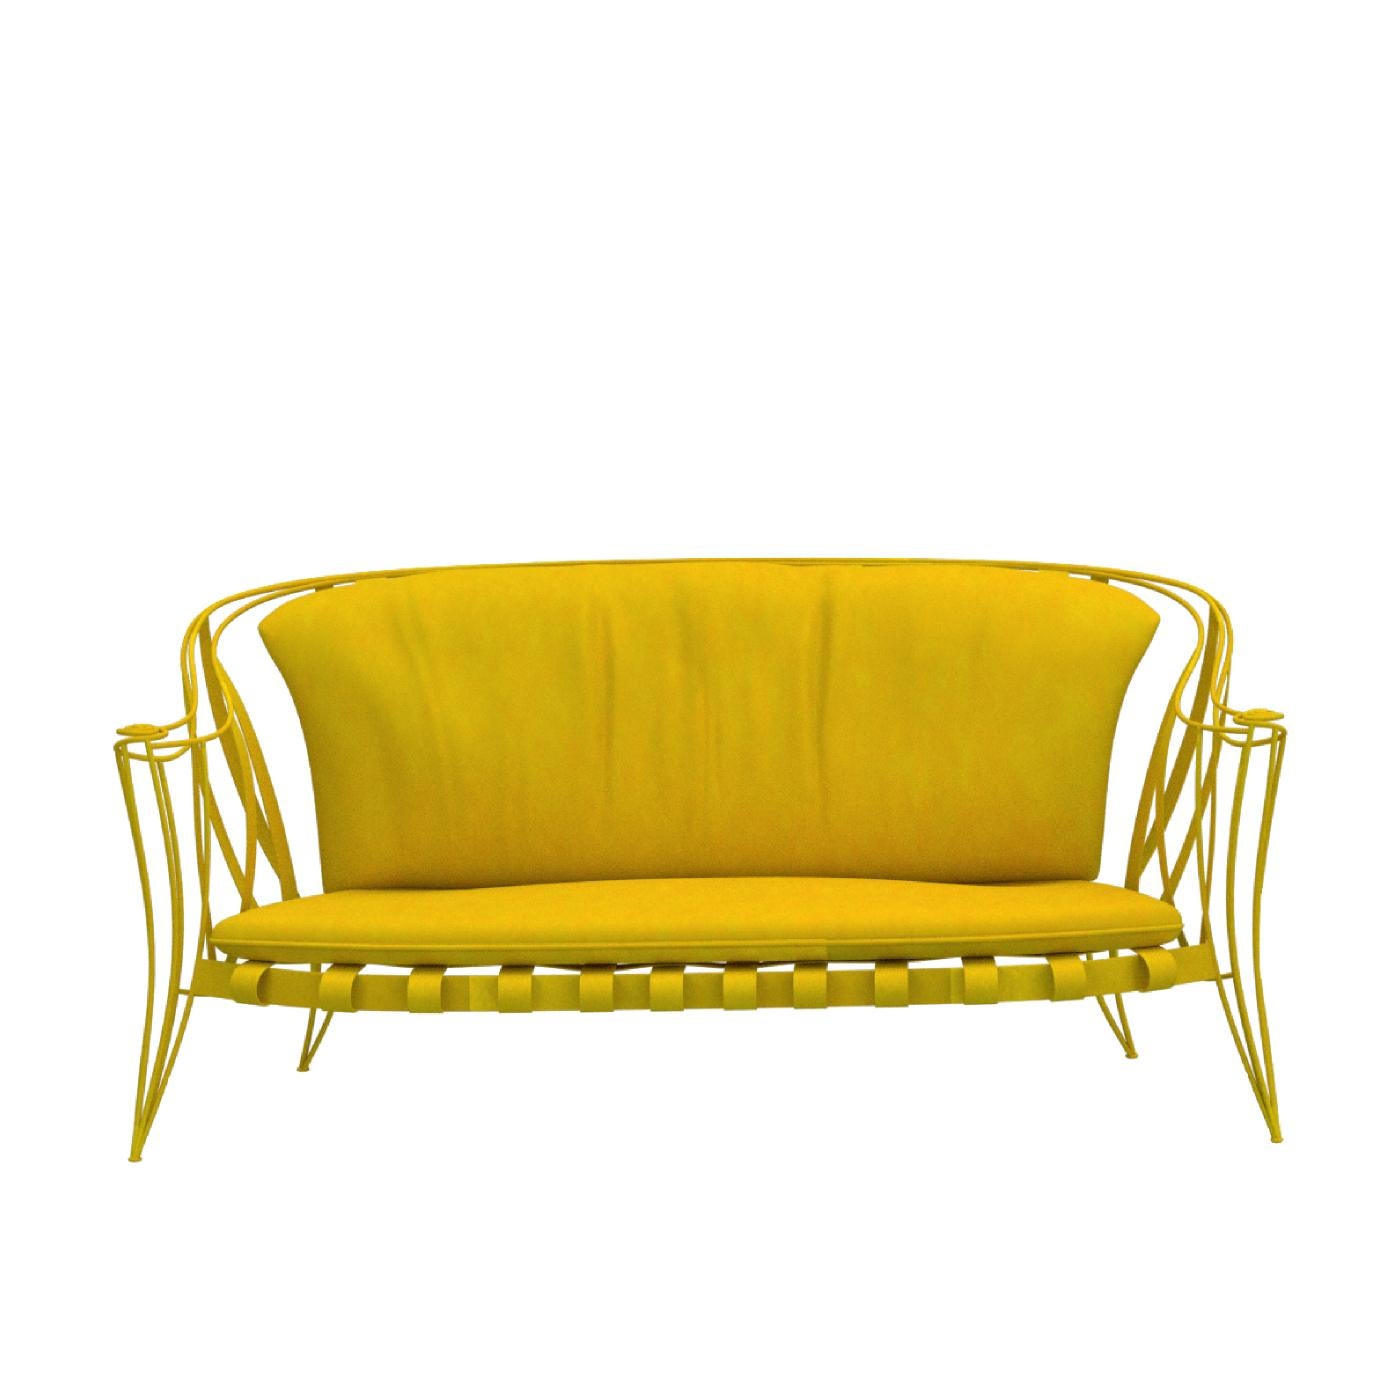 yellow garden sofa